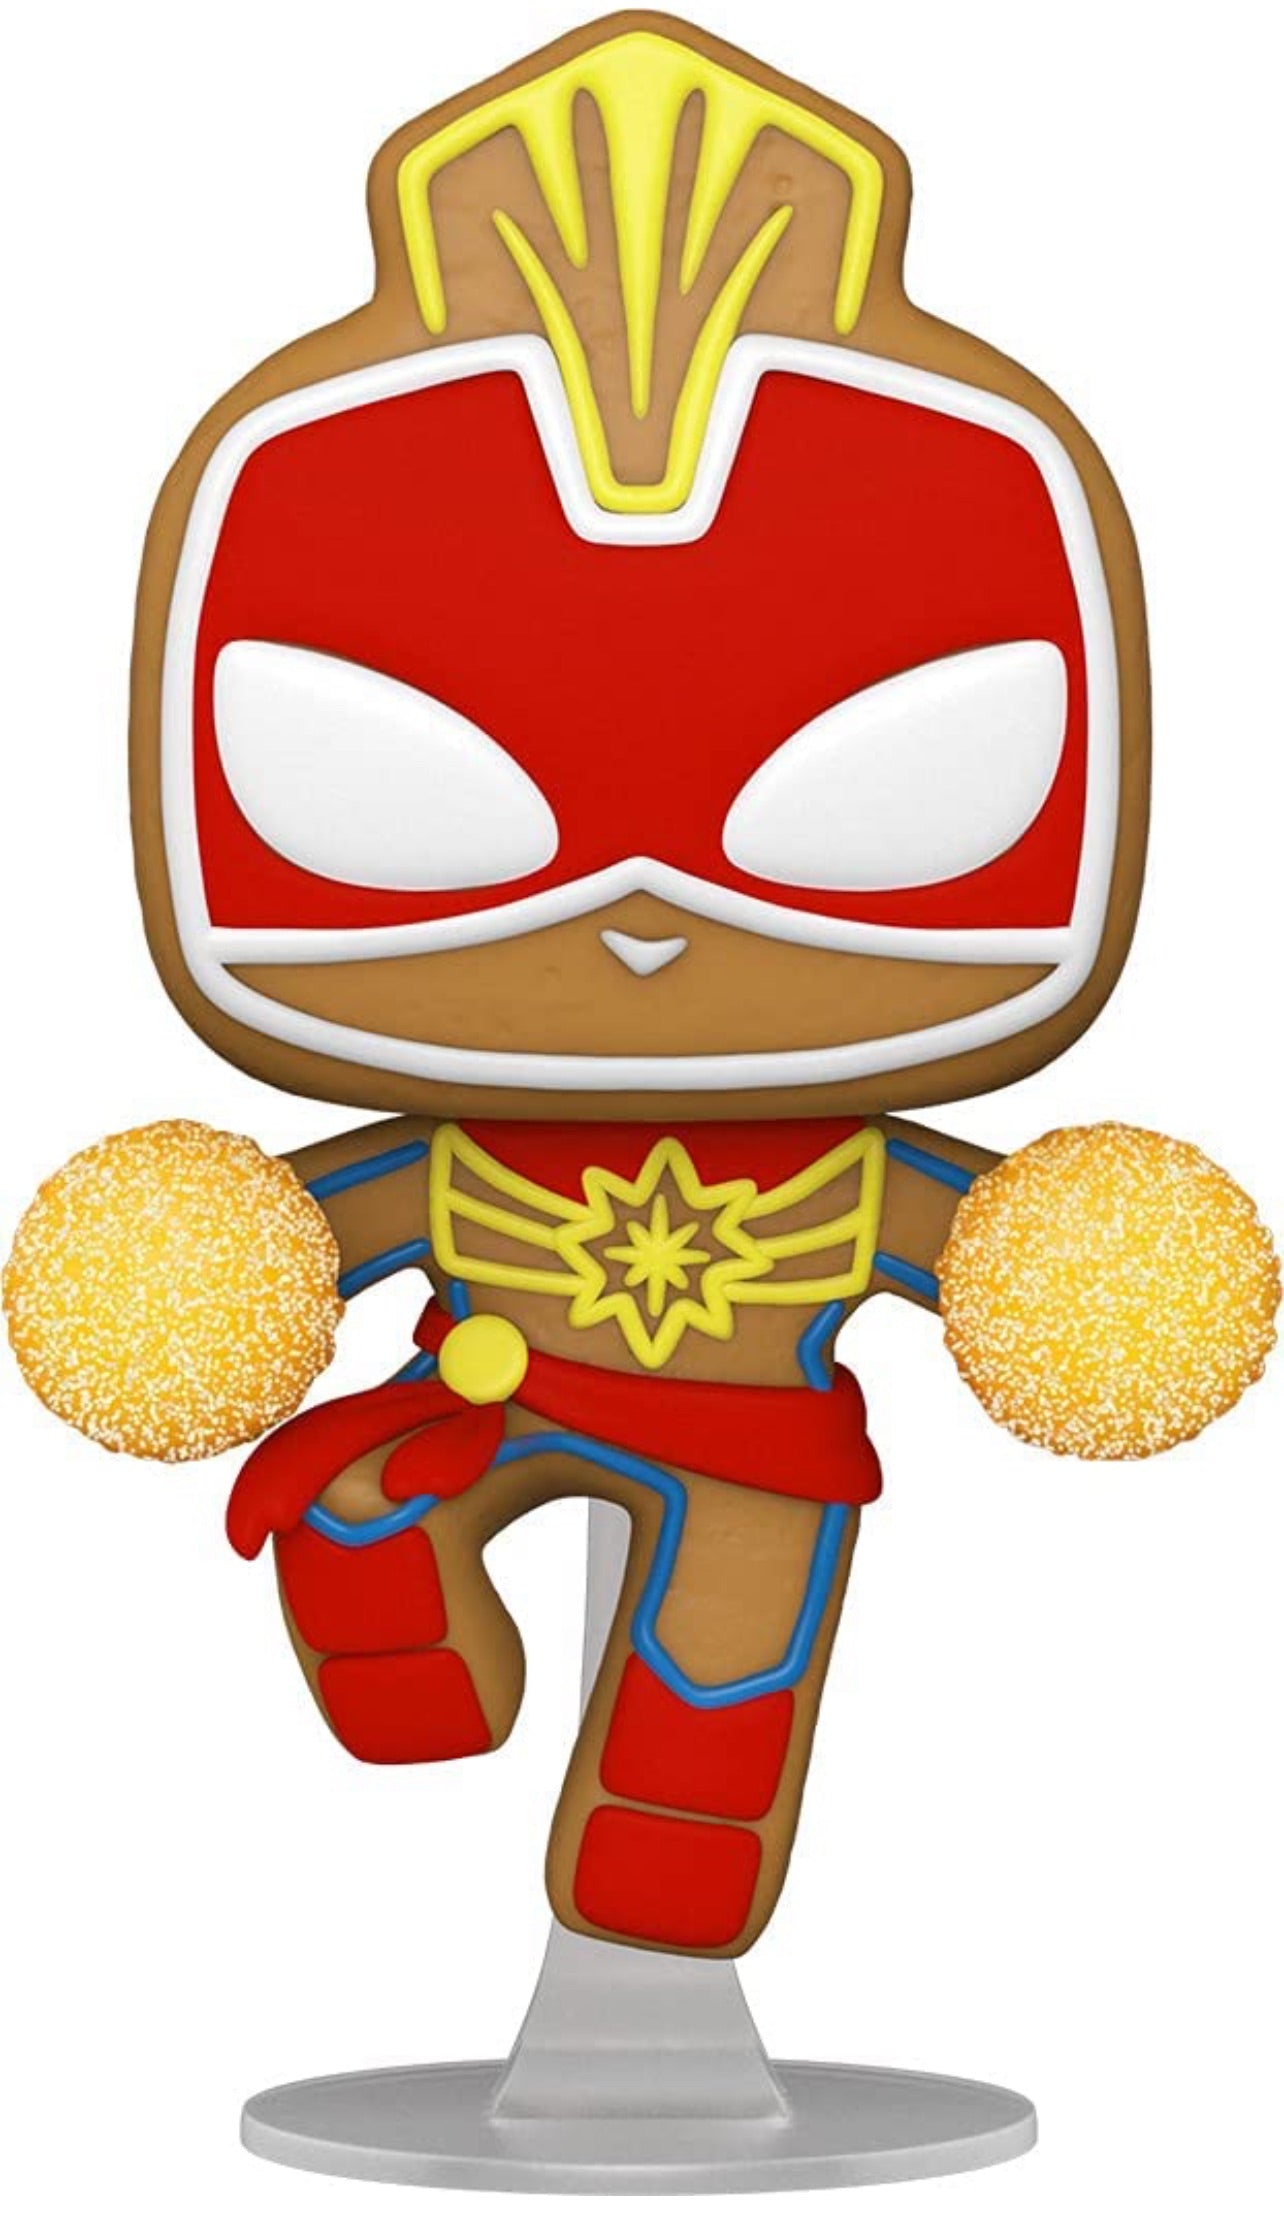 Captain Marvel - Marvel Mech Funko Pop Marvel! #831